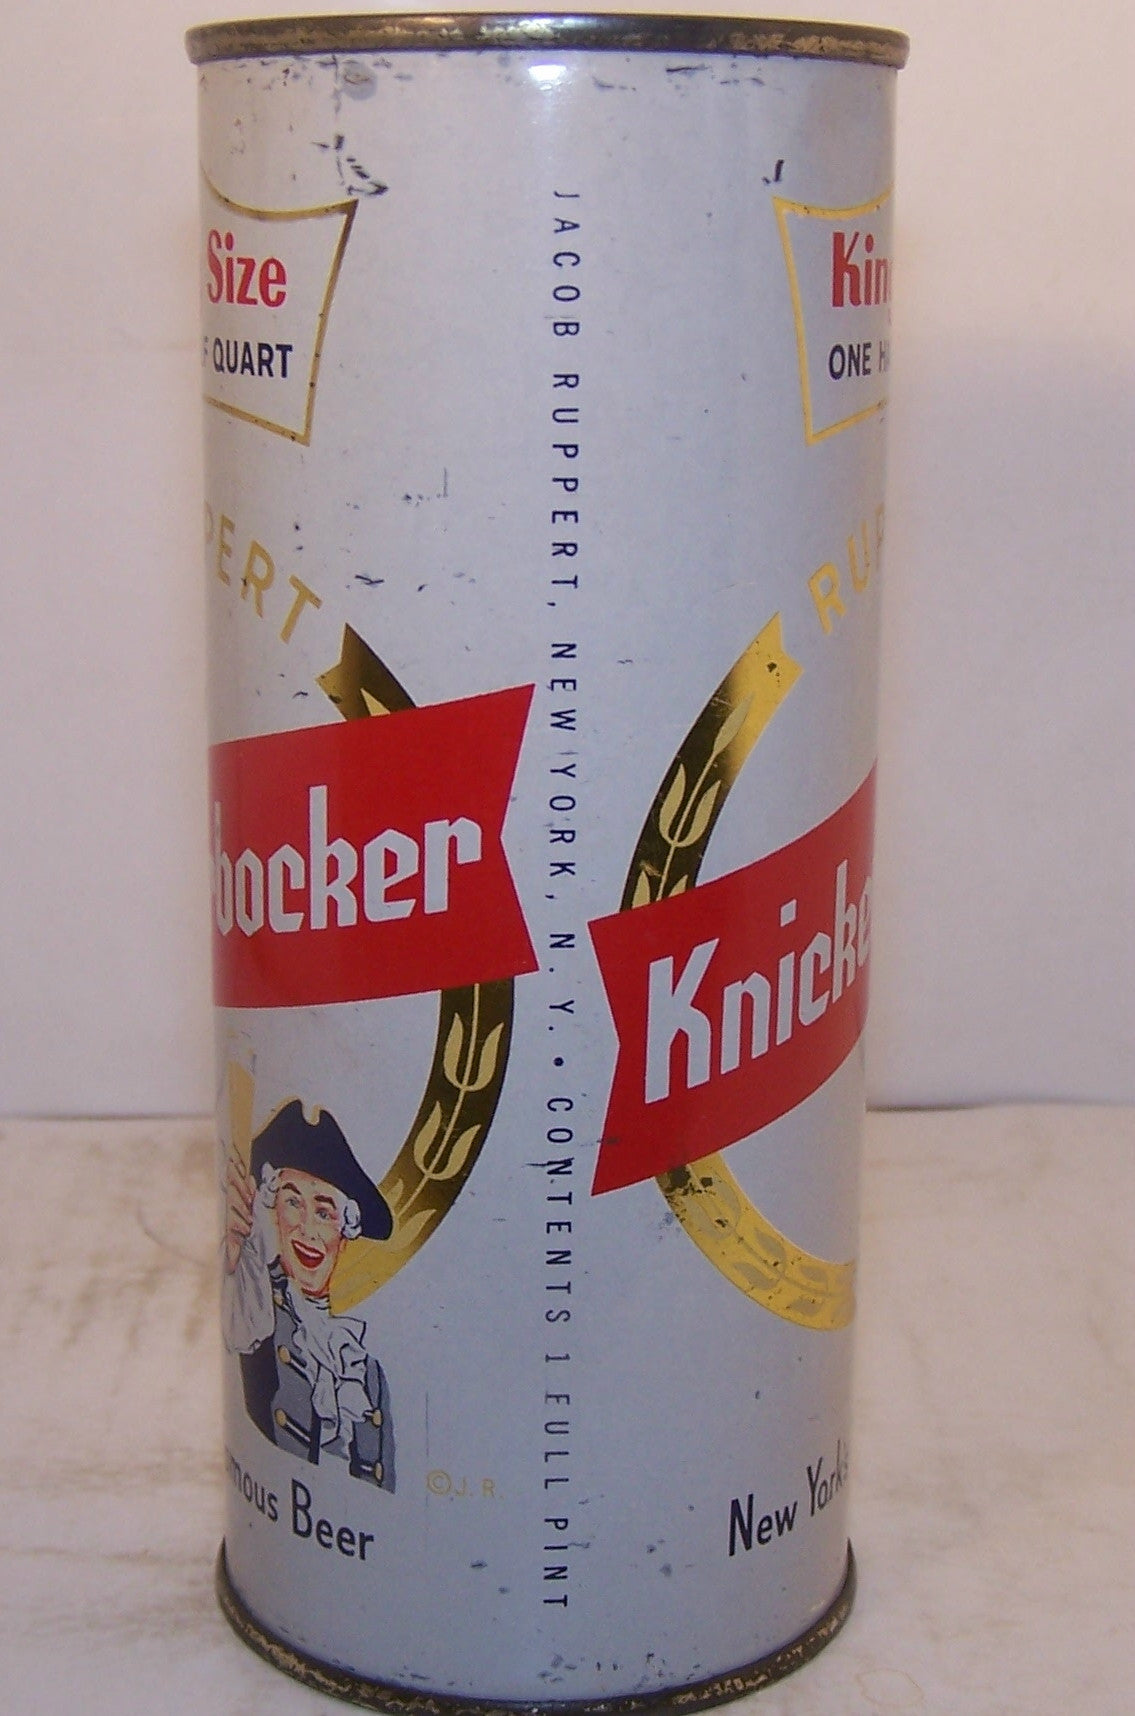 Ruppert Knickerbocker King Size, USBC 231-17, Grade 1/1- Sold on 2/11/15